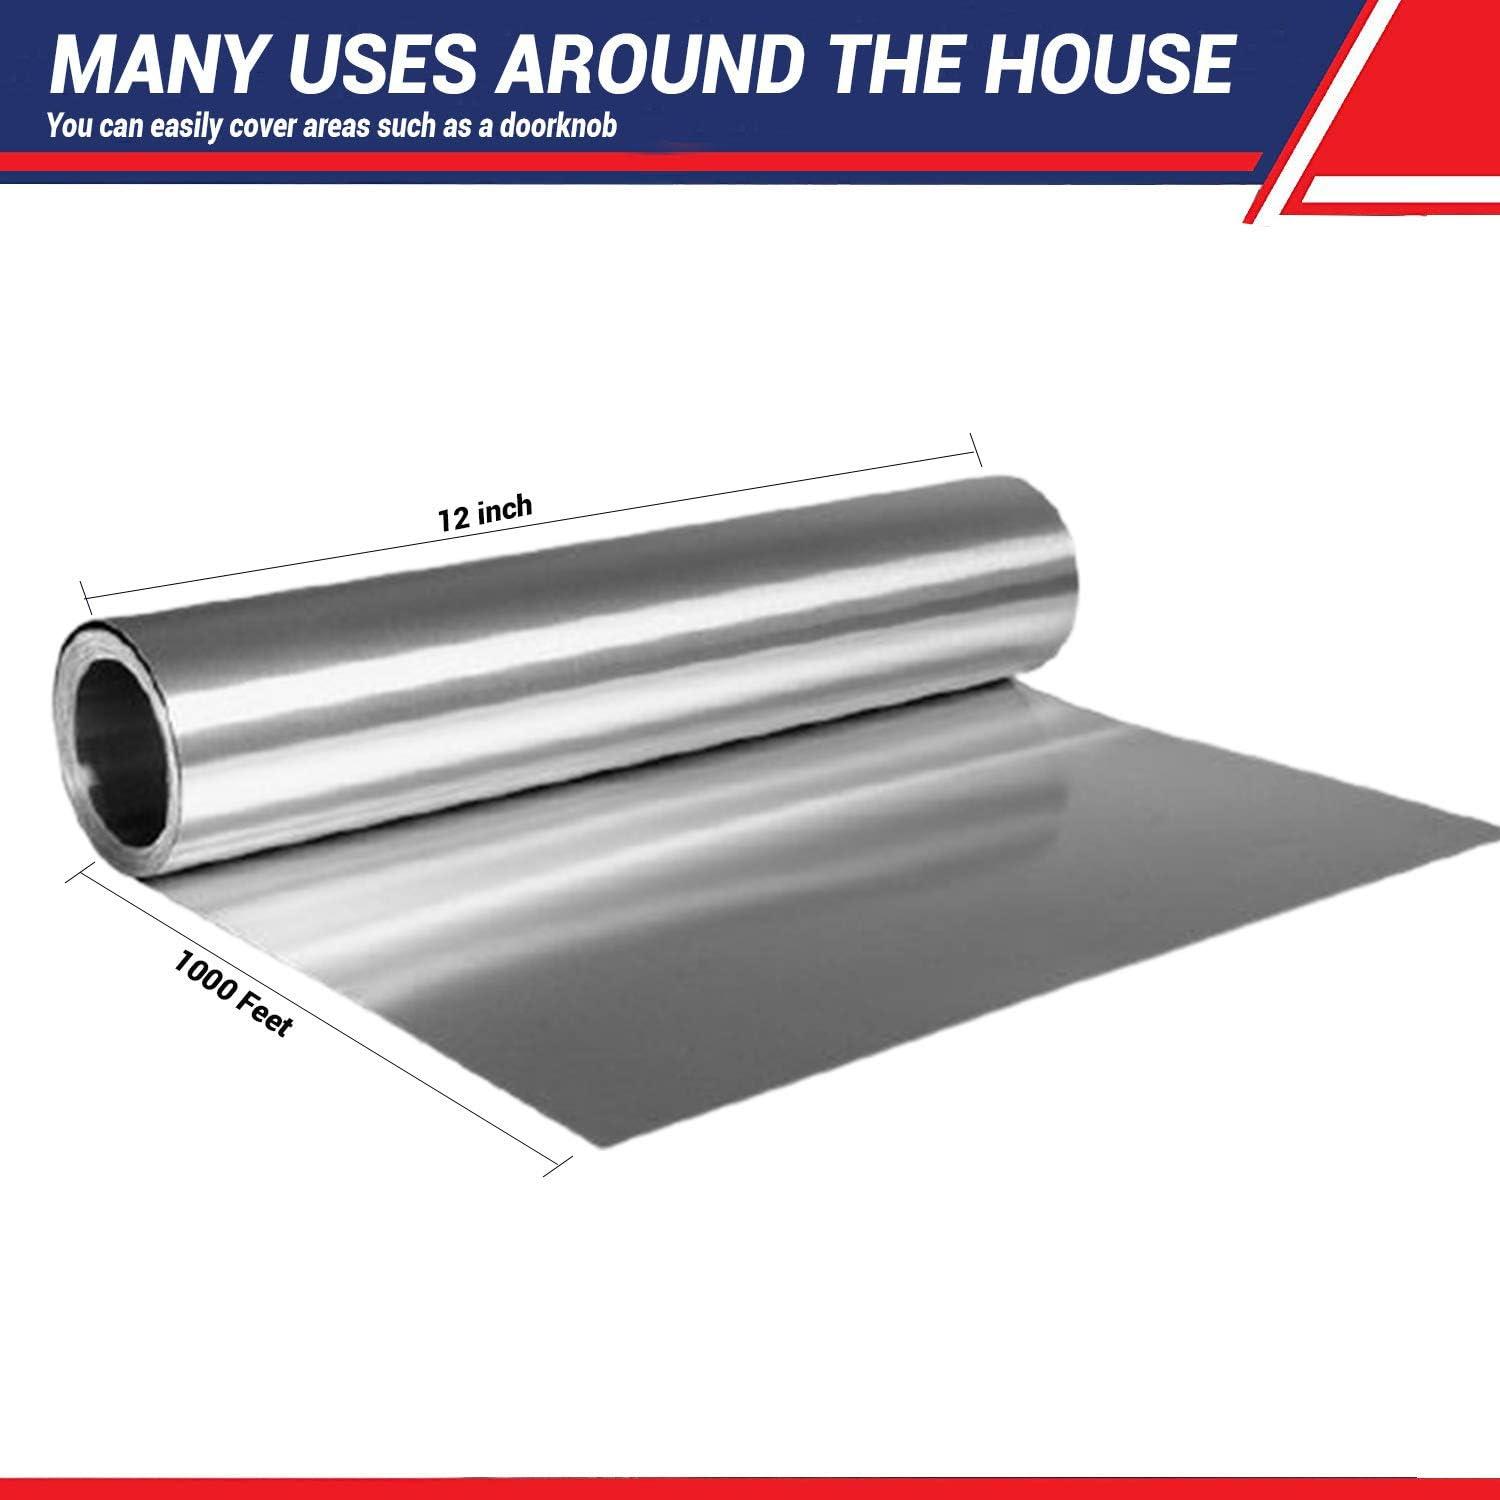 Durable Heavy Duty Aluminum Foil Roll, 12 Width x 500' Length